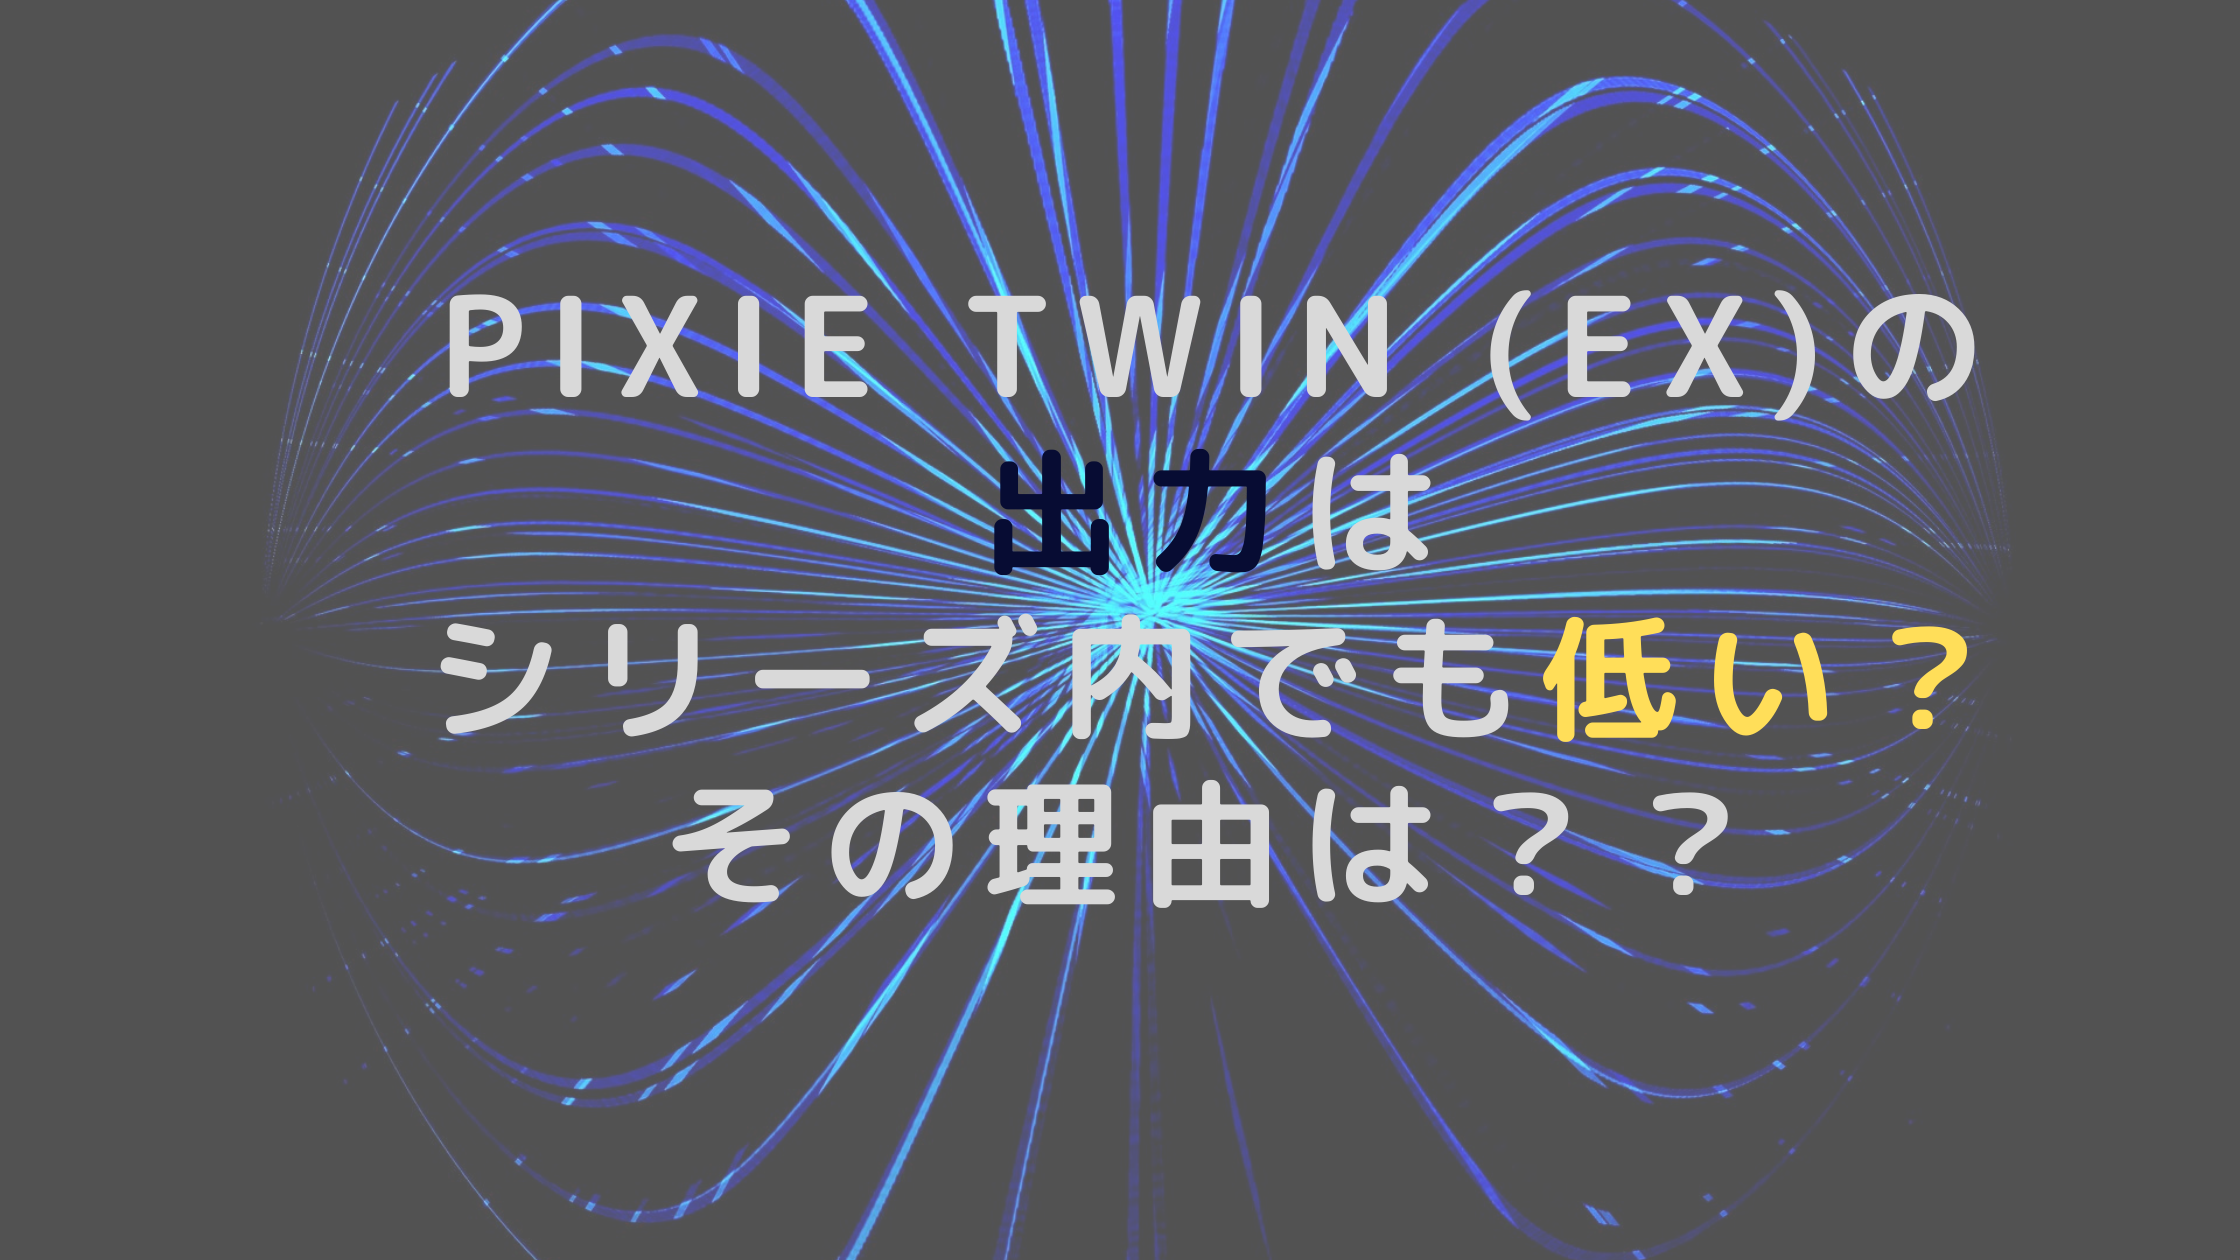 pixie twin (EX)の出力はシリーズ内でも低い？その理由は？？